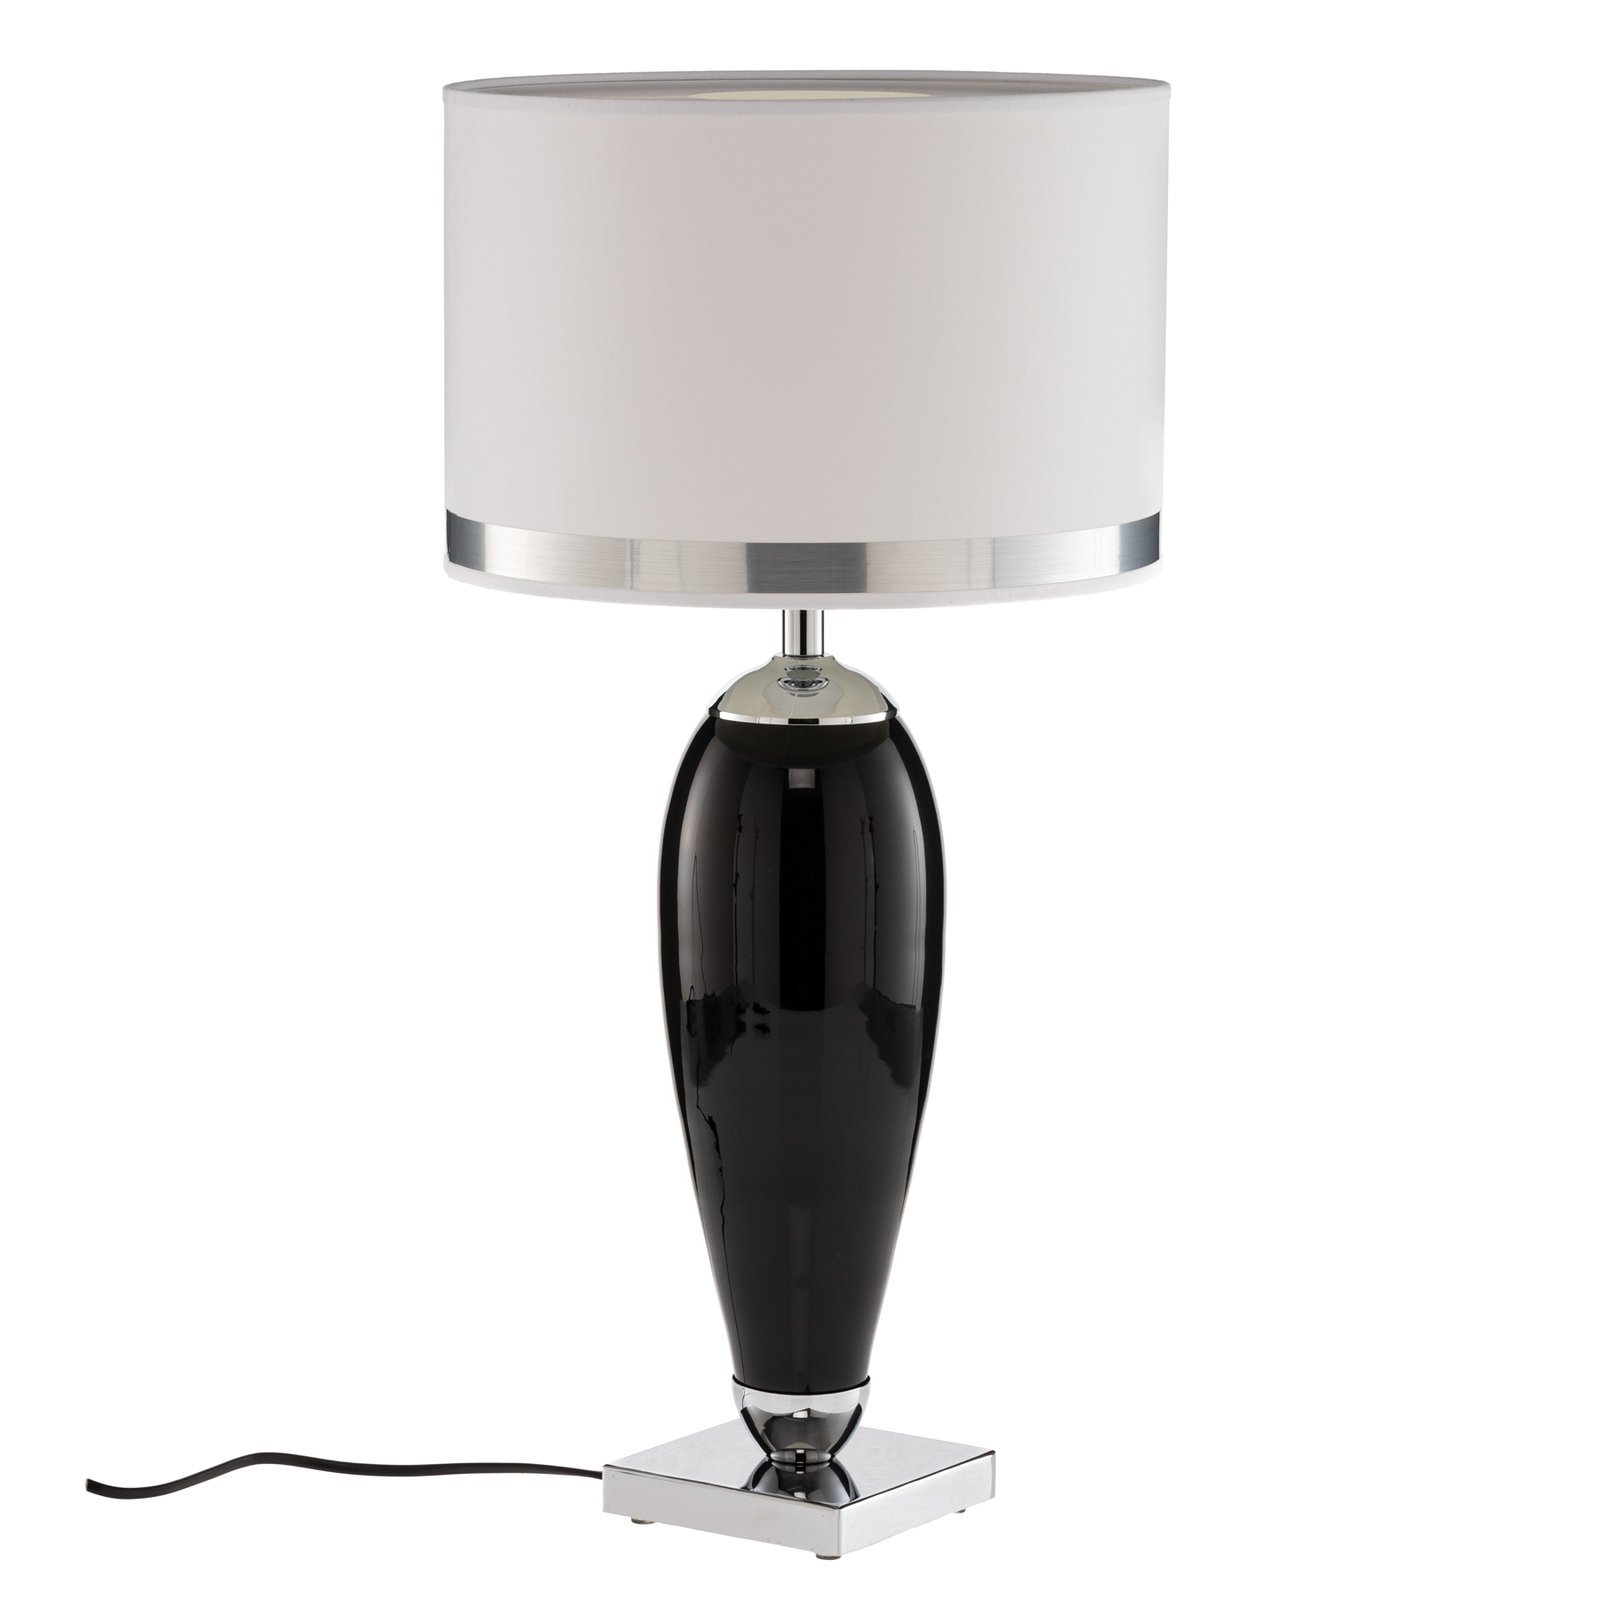 Bordlampe Lund i hvit og svart, høyde 60 cm